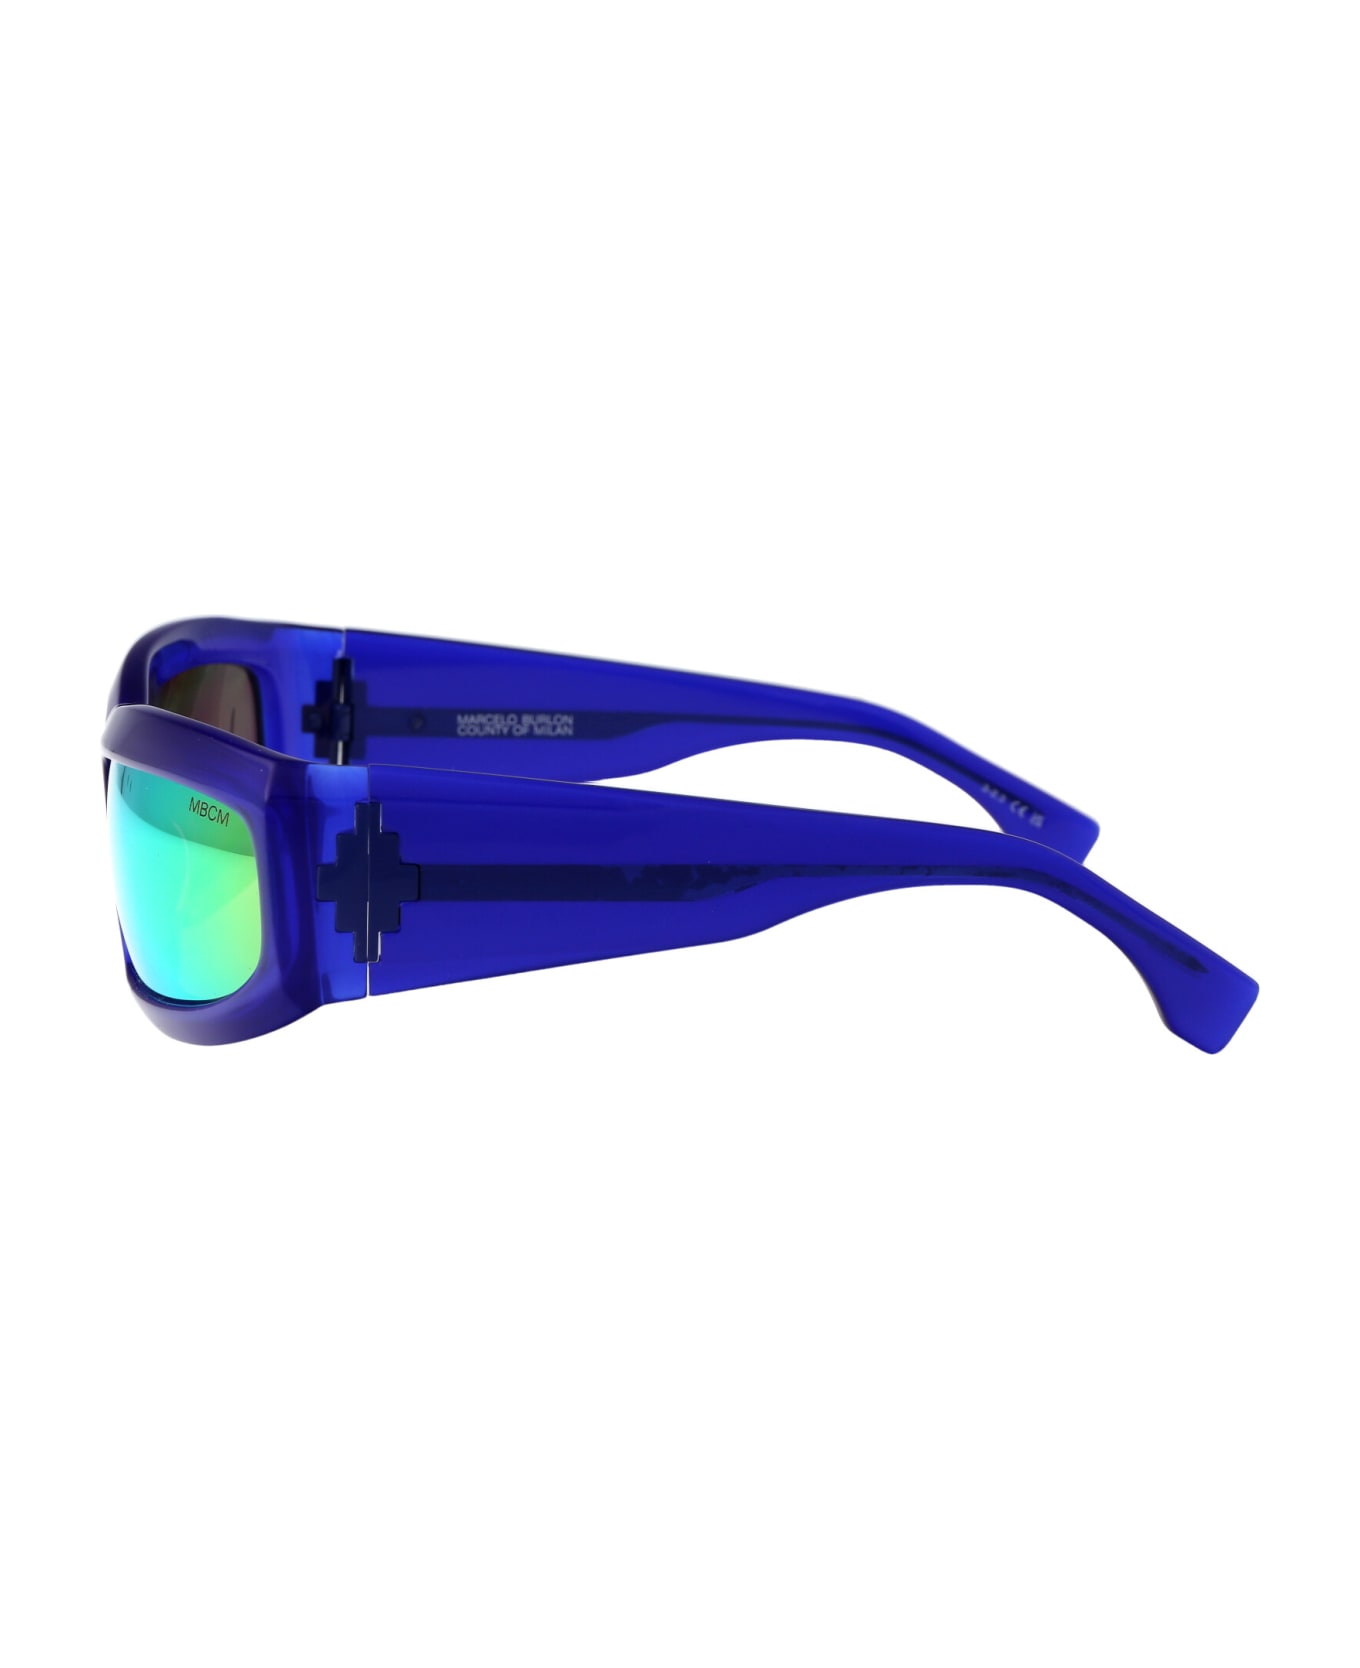 Marcelo Burlon Catemu Sunglasses - 4555 BLUE